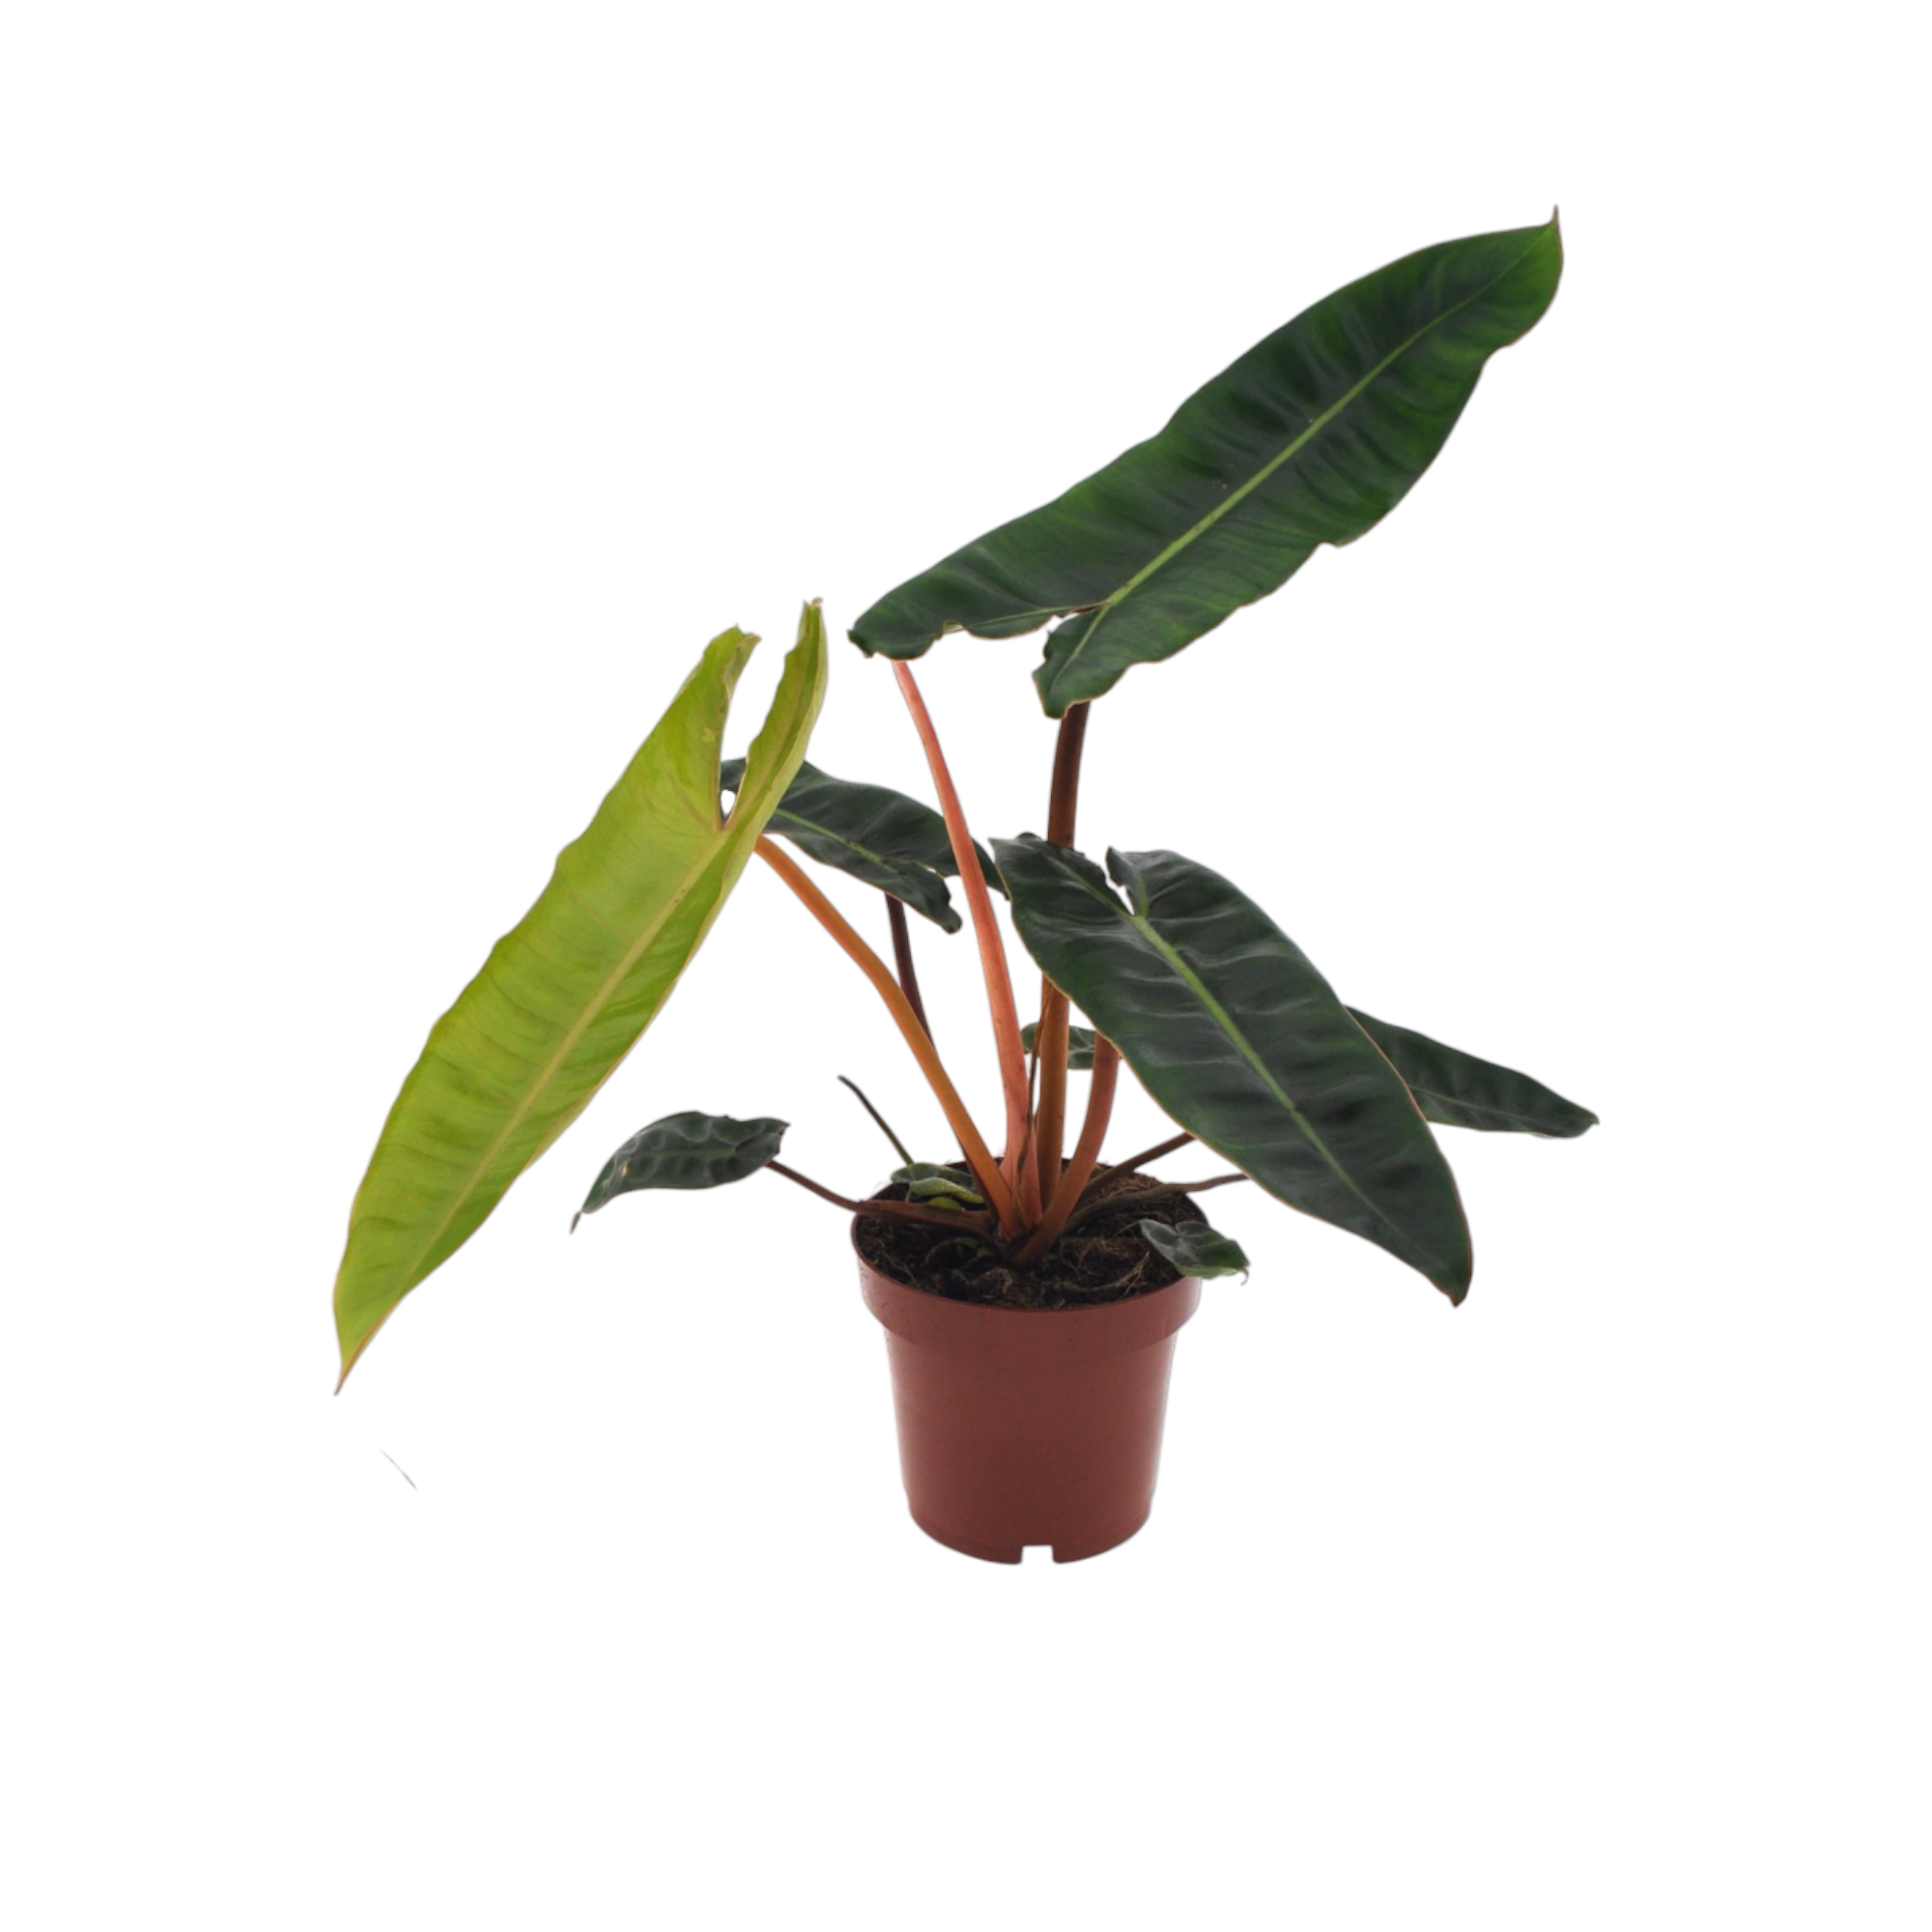 Plante d'intérieur - philodendron billietiae 25.0cm